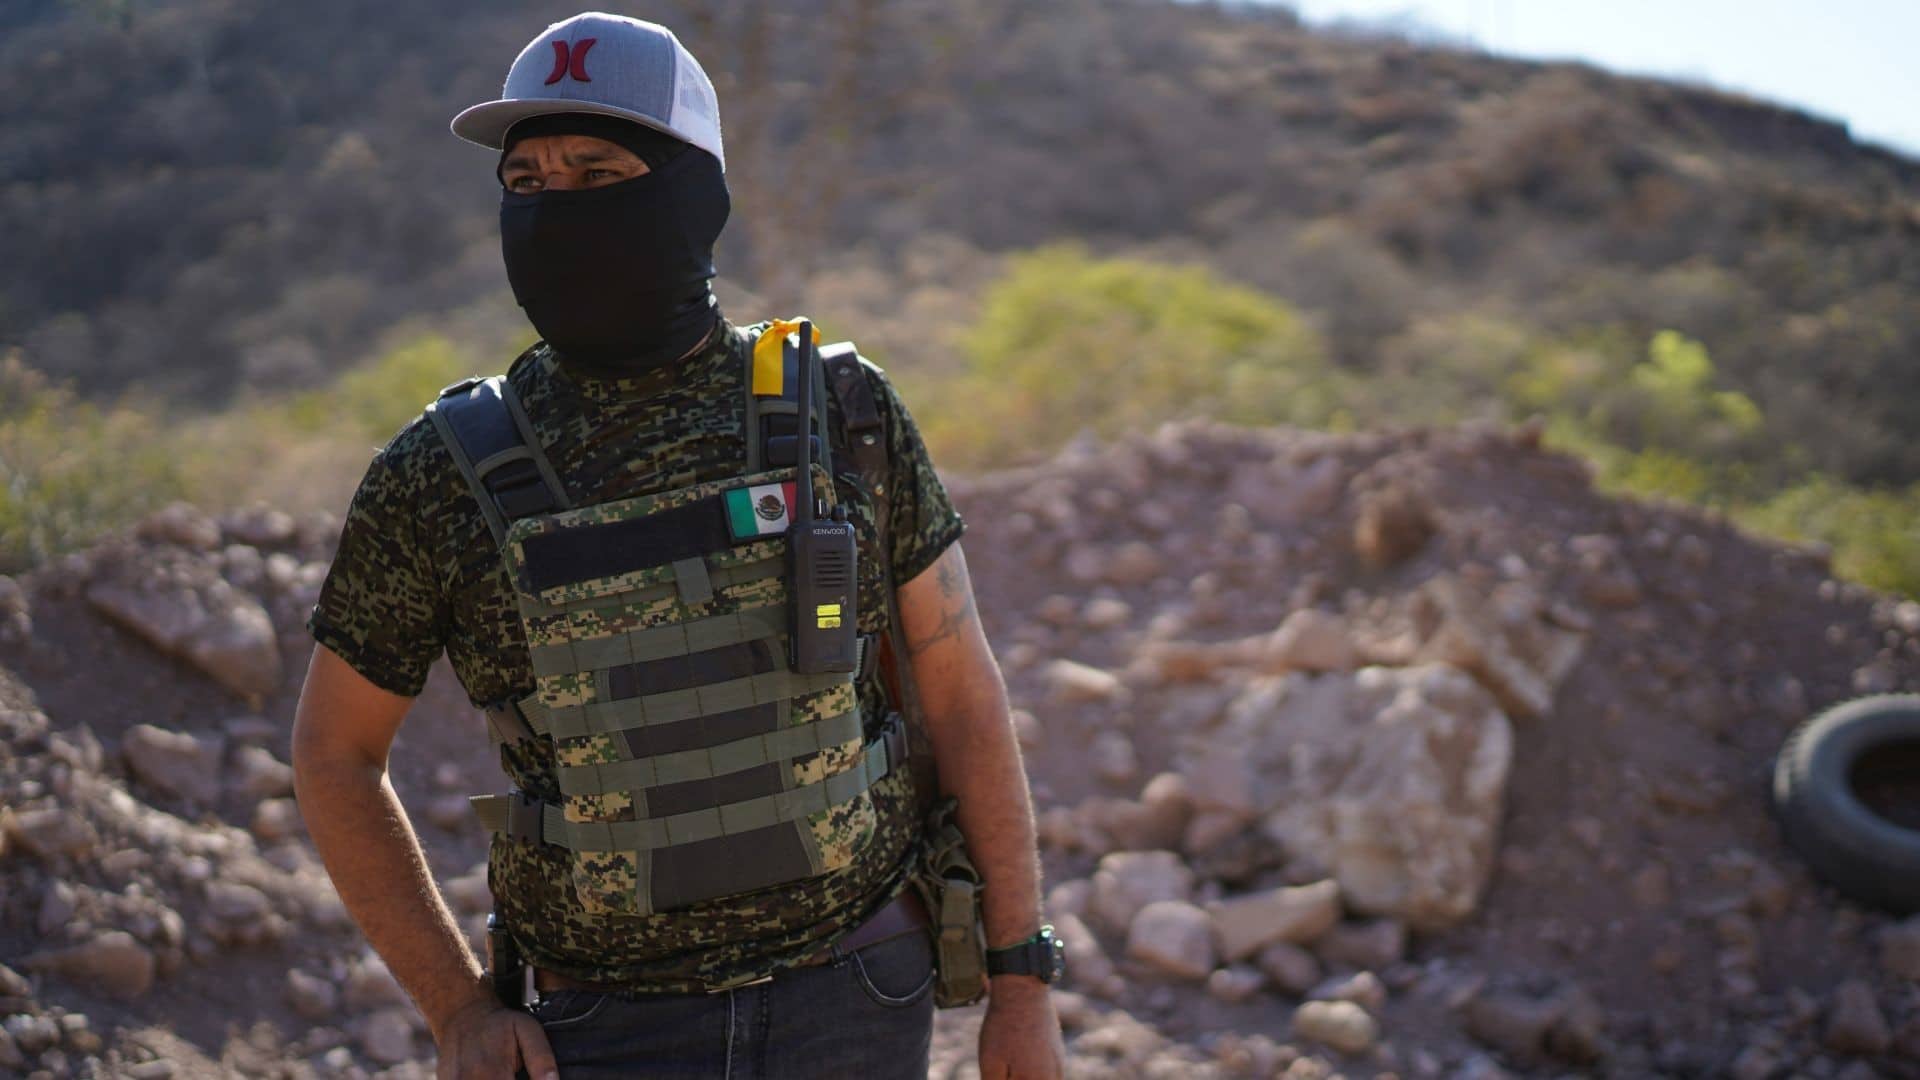 Grupo de autodefensa se adjudica acción armada en Chiapas